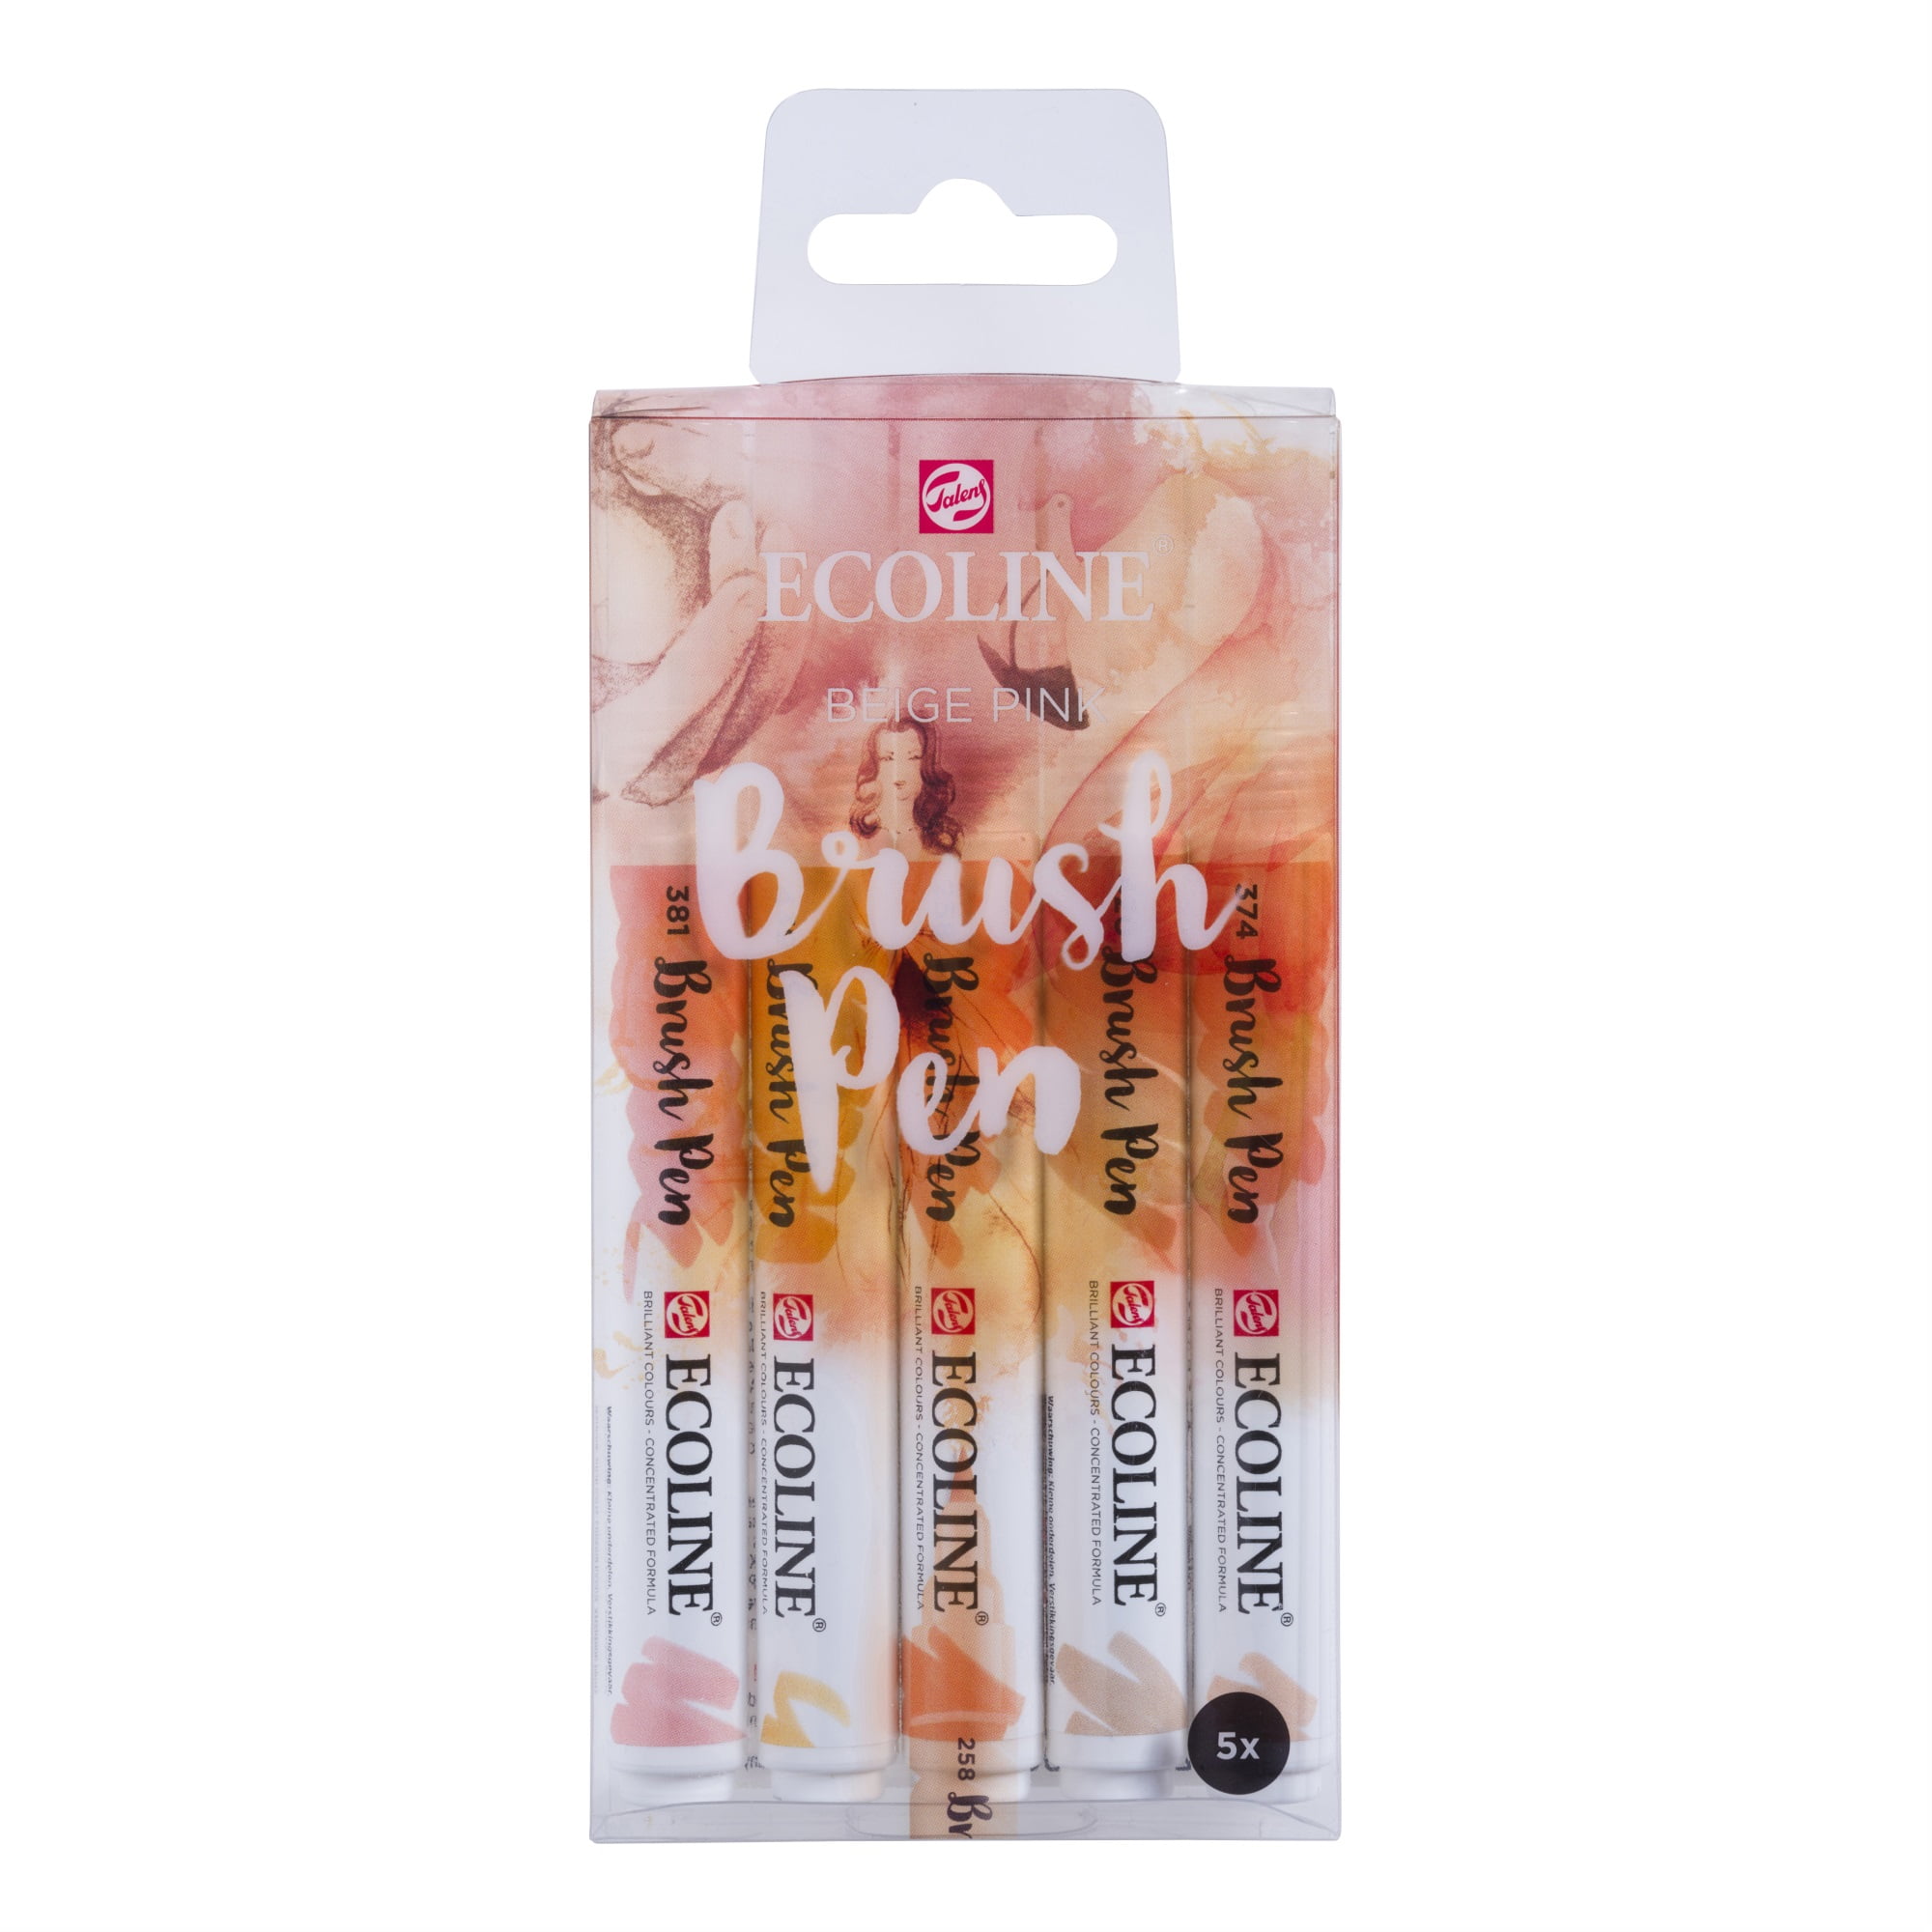 Royal Talens Ecoline Brush Marker Set - Beige/Pink Hues, Set of 5 